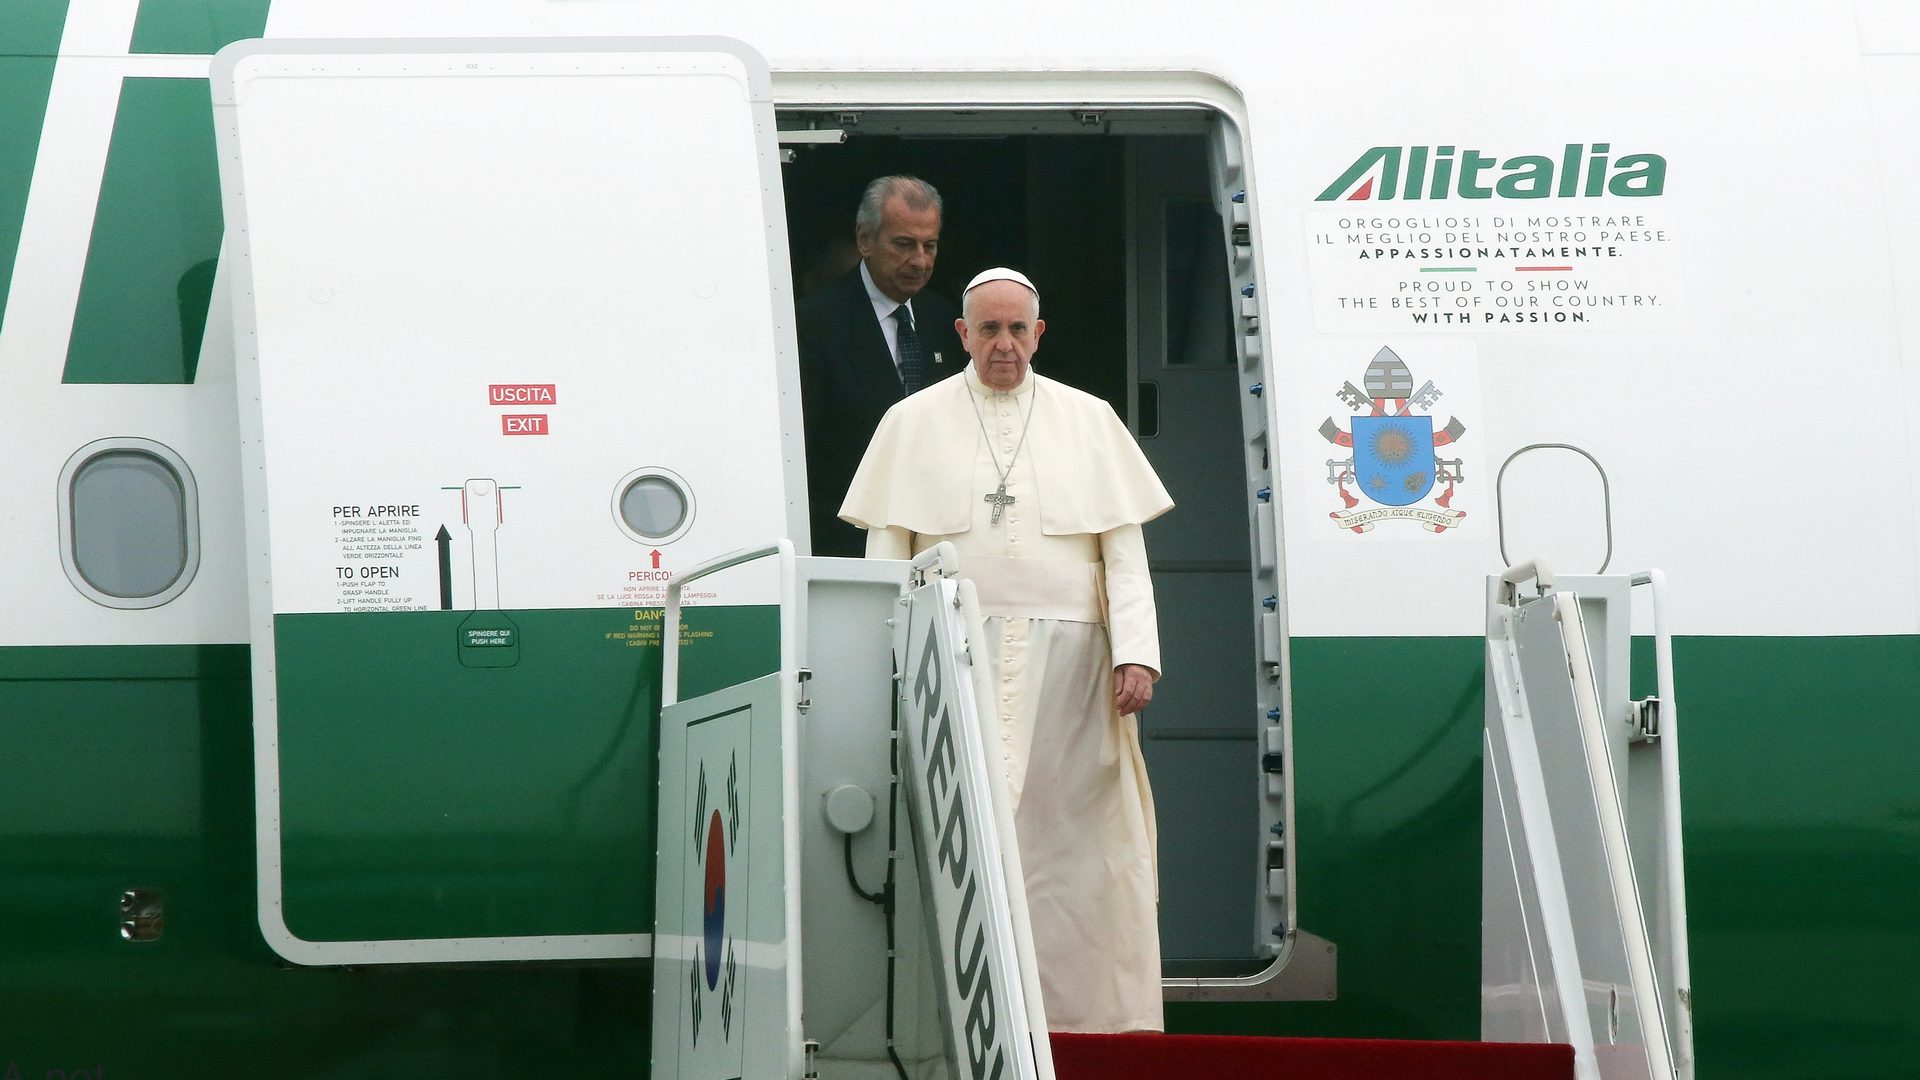 Le pape François à sa descente d'avion   | © Flickr CC BY-SA 2.0